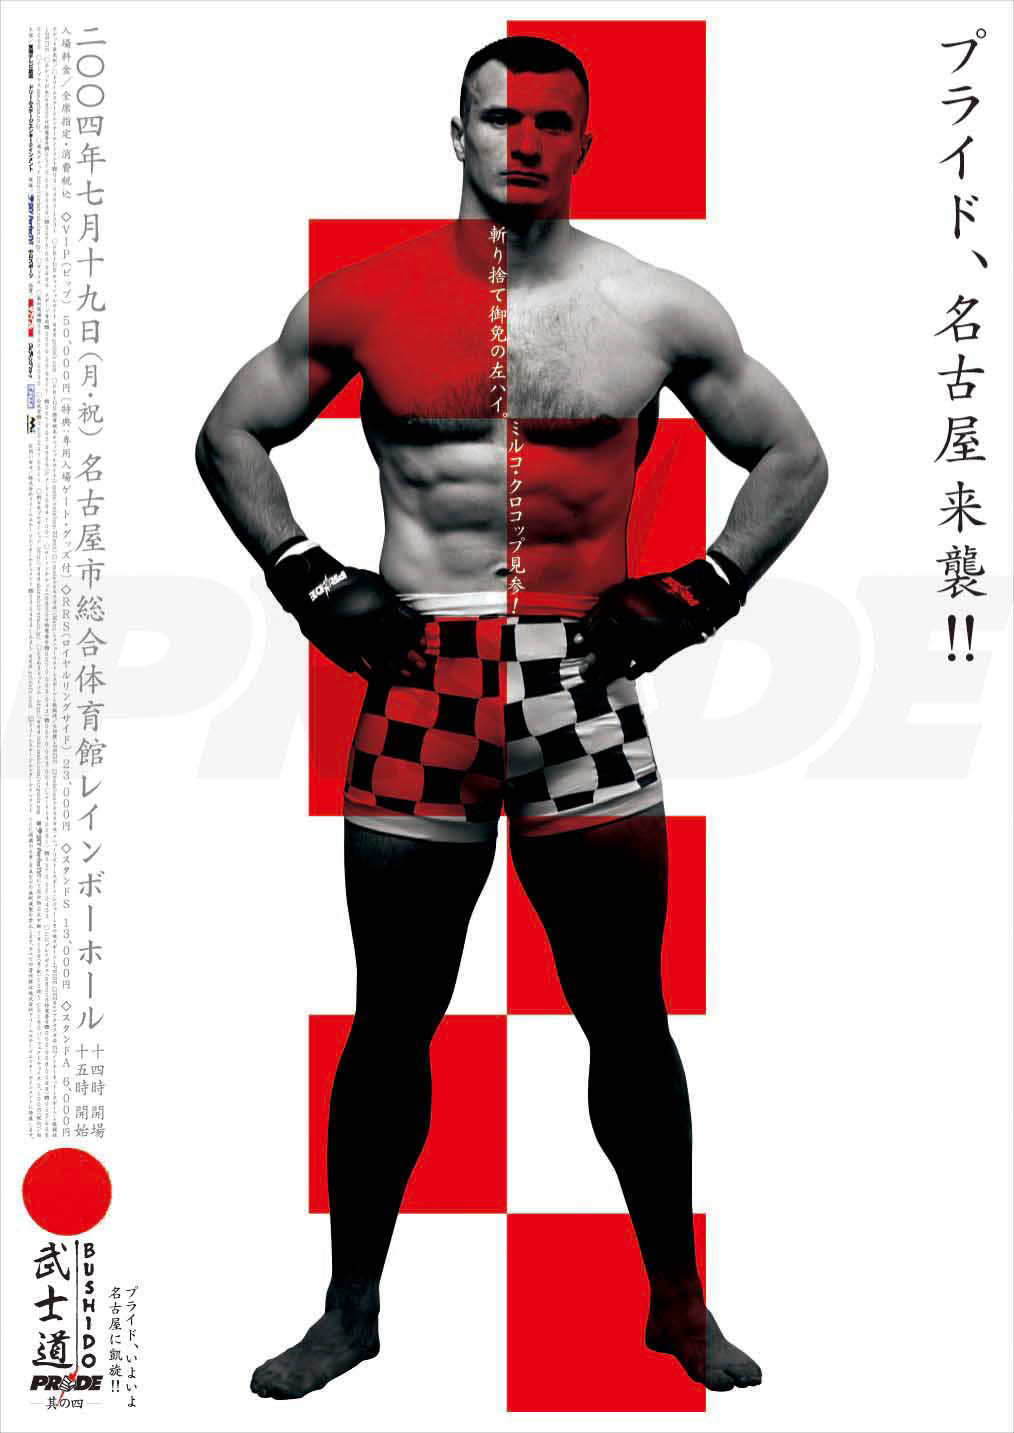 pride MMA poster